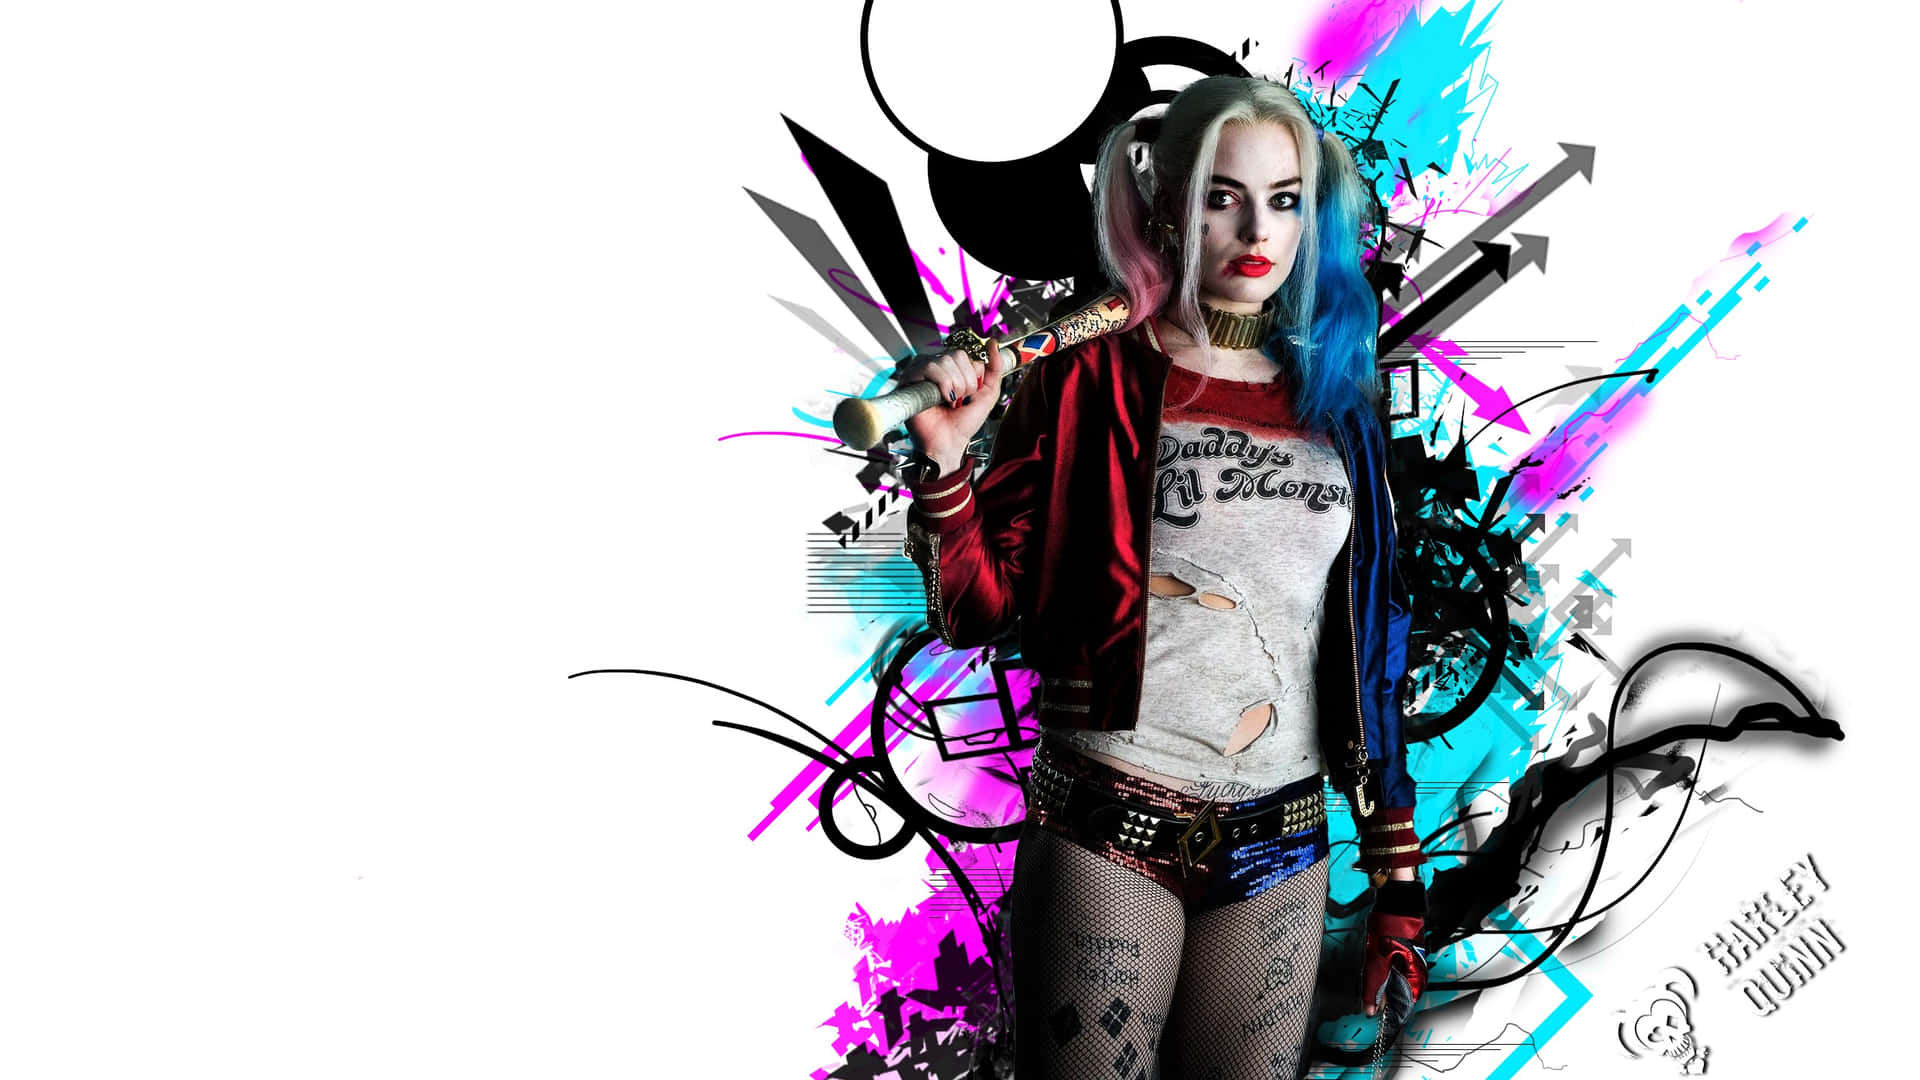 Dieliebe Zwischen Joker Und Harley Quinn Aus Suicide Squad. Wallpaper